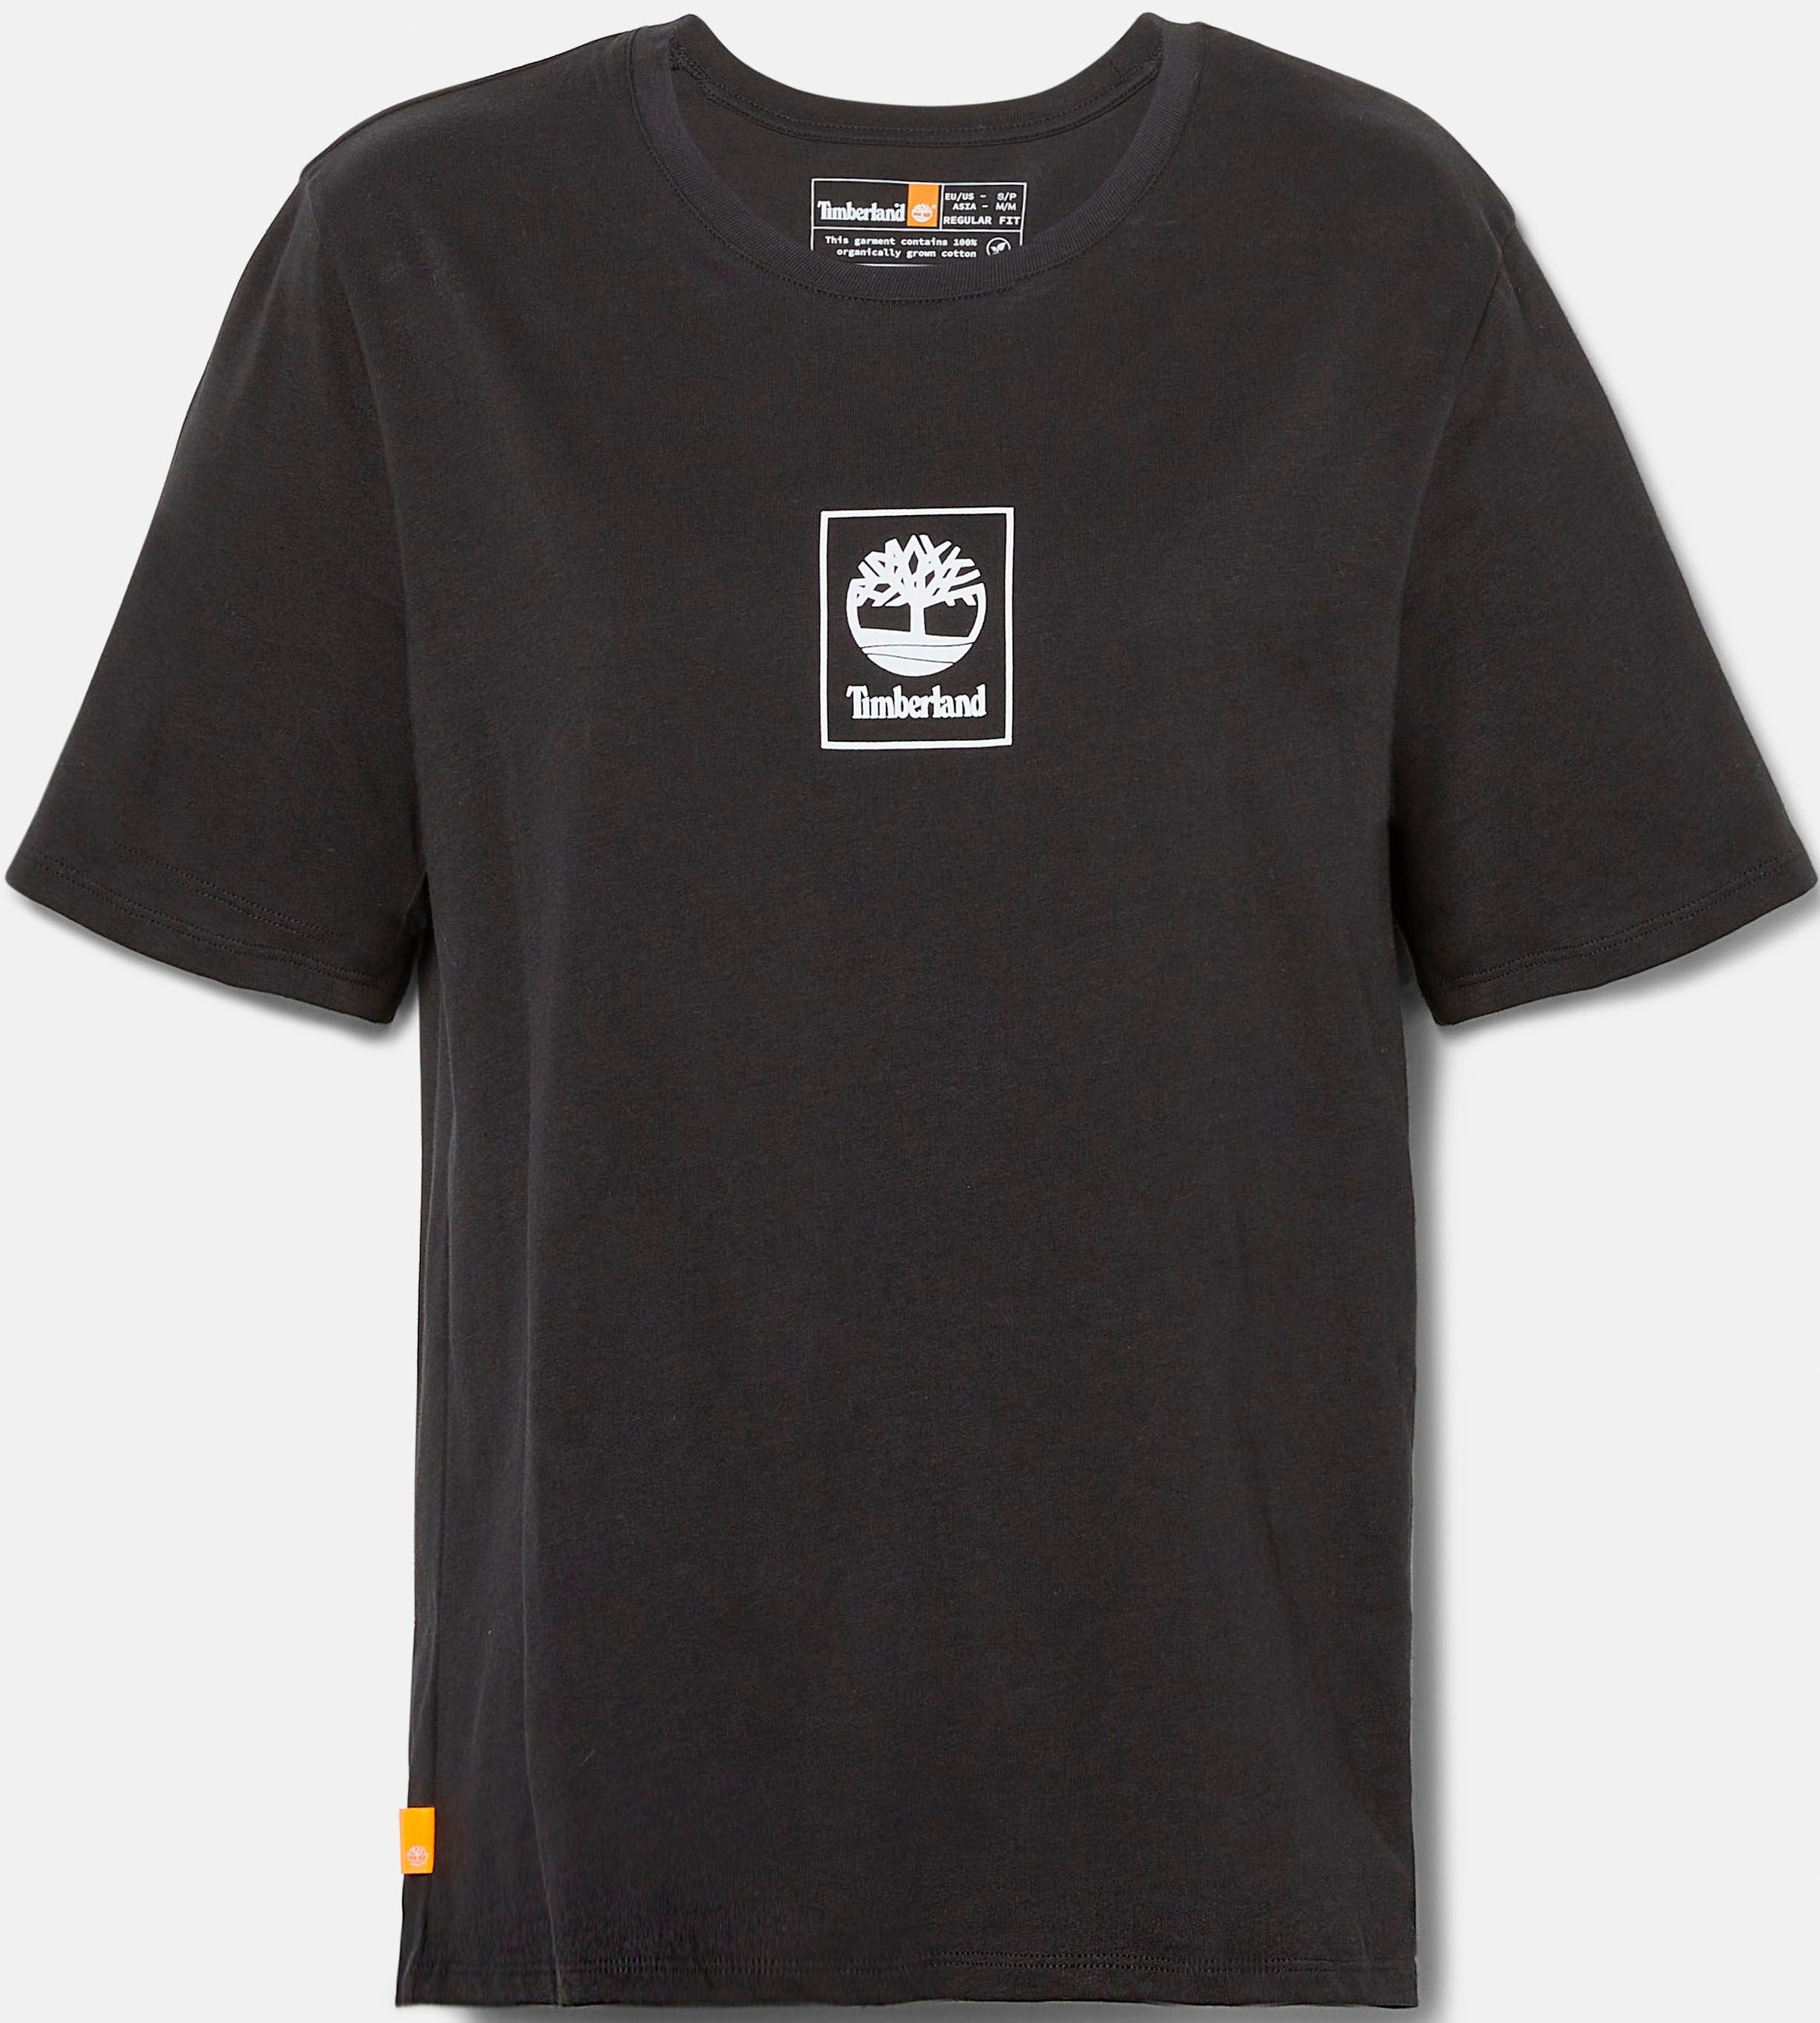 »STACK T-Shirt Timberland bei REGULAR LOGO Logodruck mit ♕ TEE«,